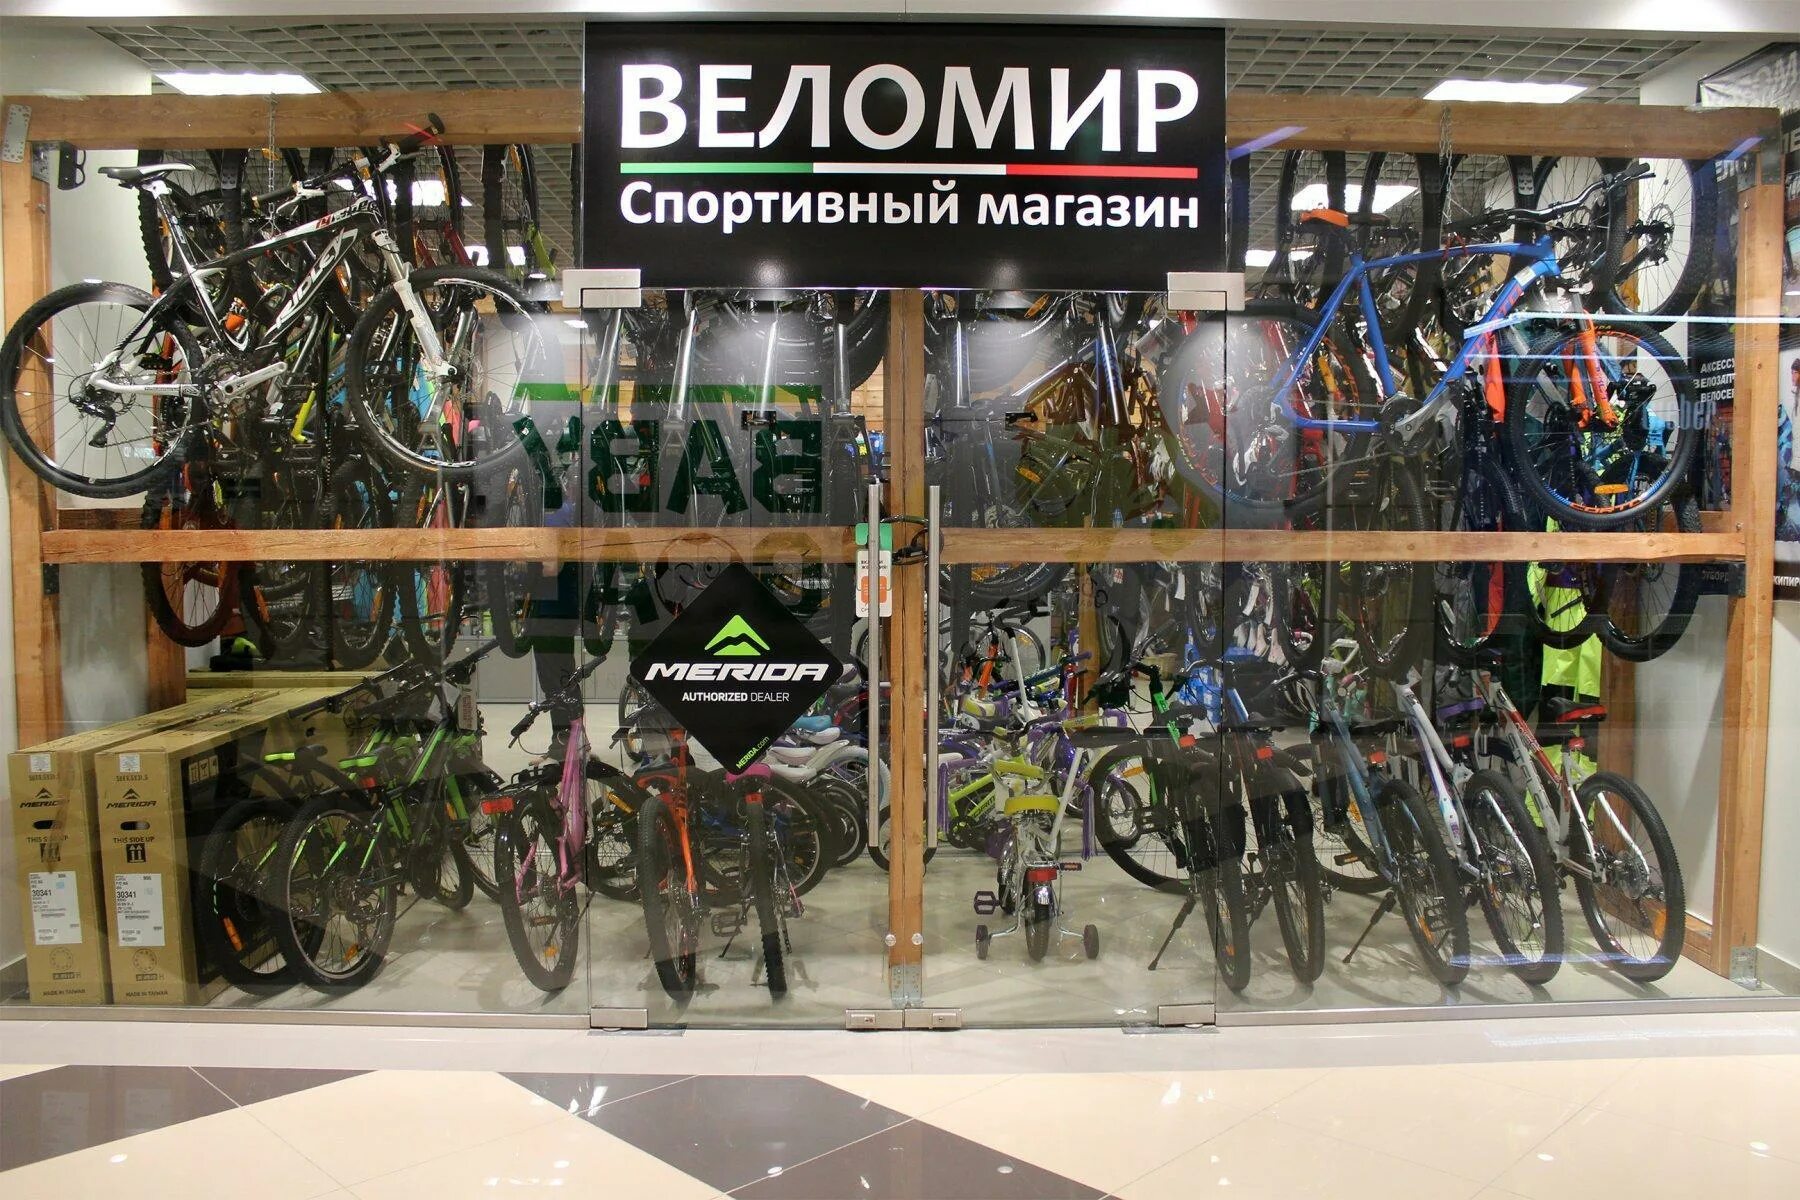 Самара Московское шоссе 17 Веломир. Магазин велосипедов Веломир. Велосипеды в орле магазины цены